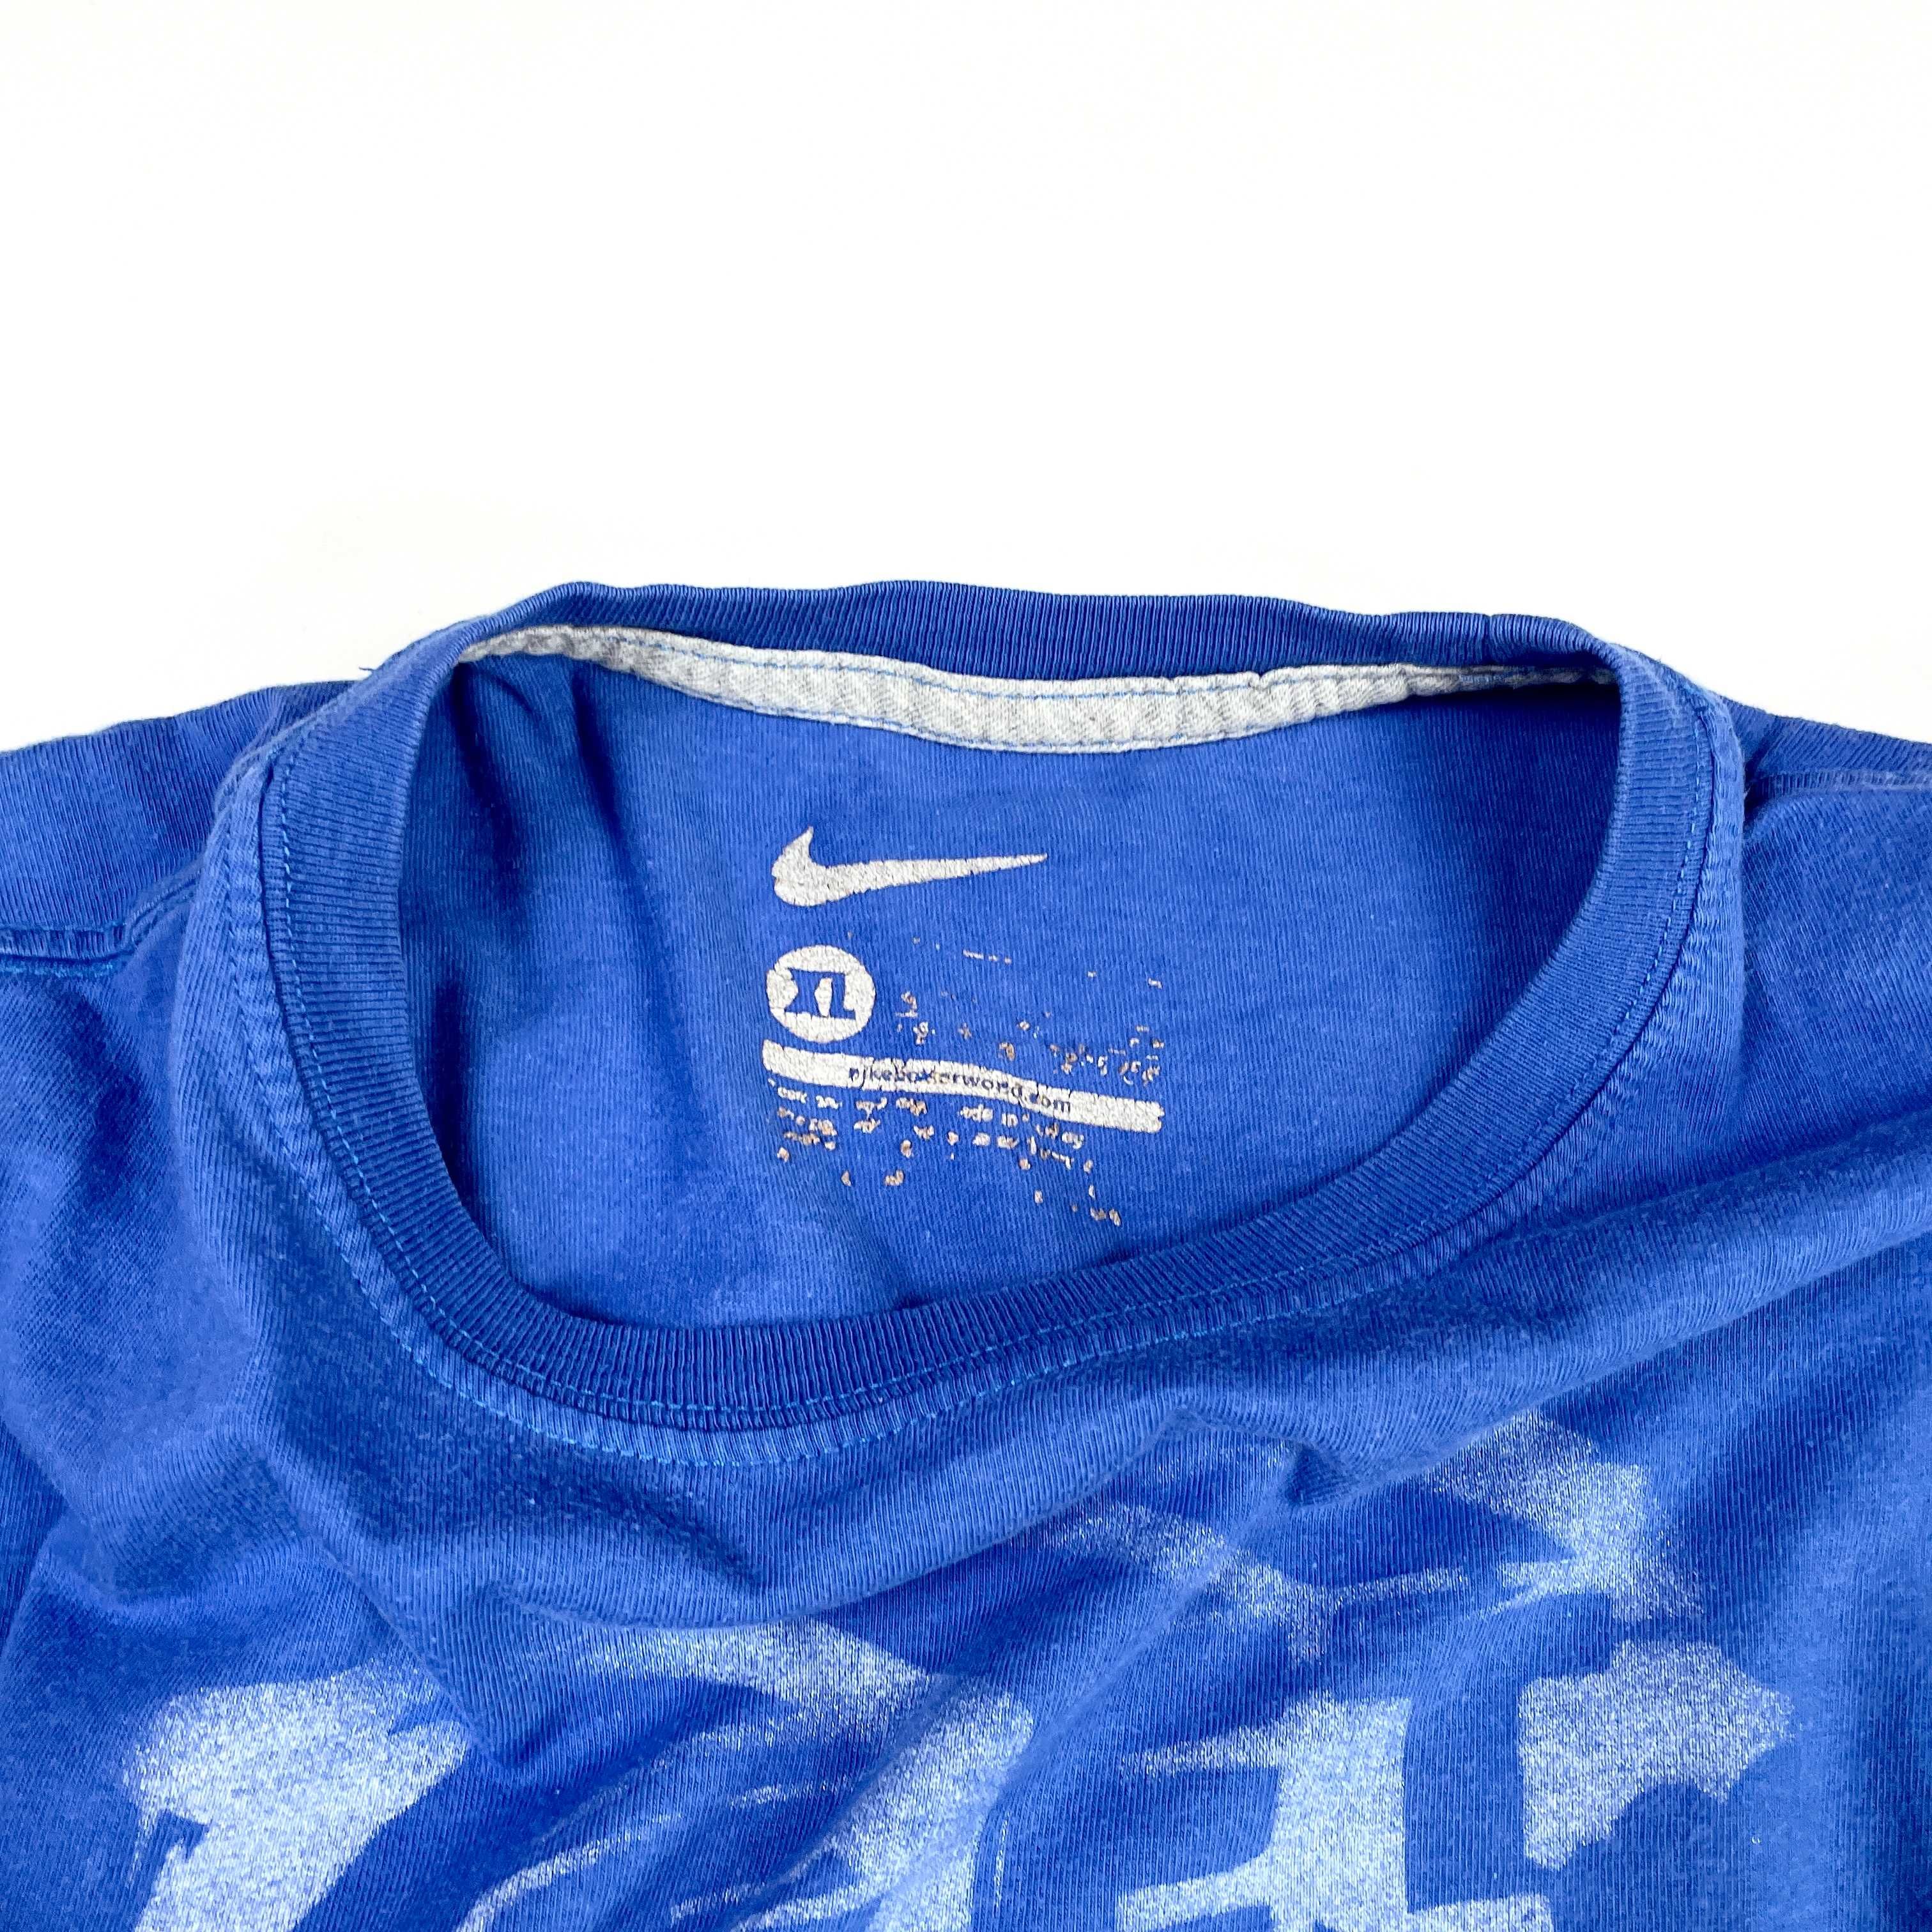 Nike koszulka z dużym nadrukiem „I get some fresh airs” streetwear (M)